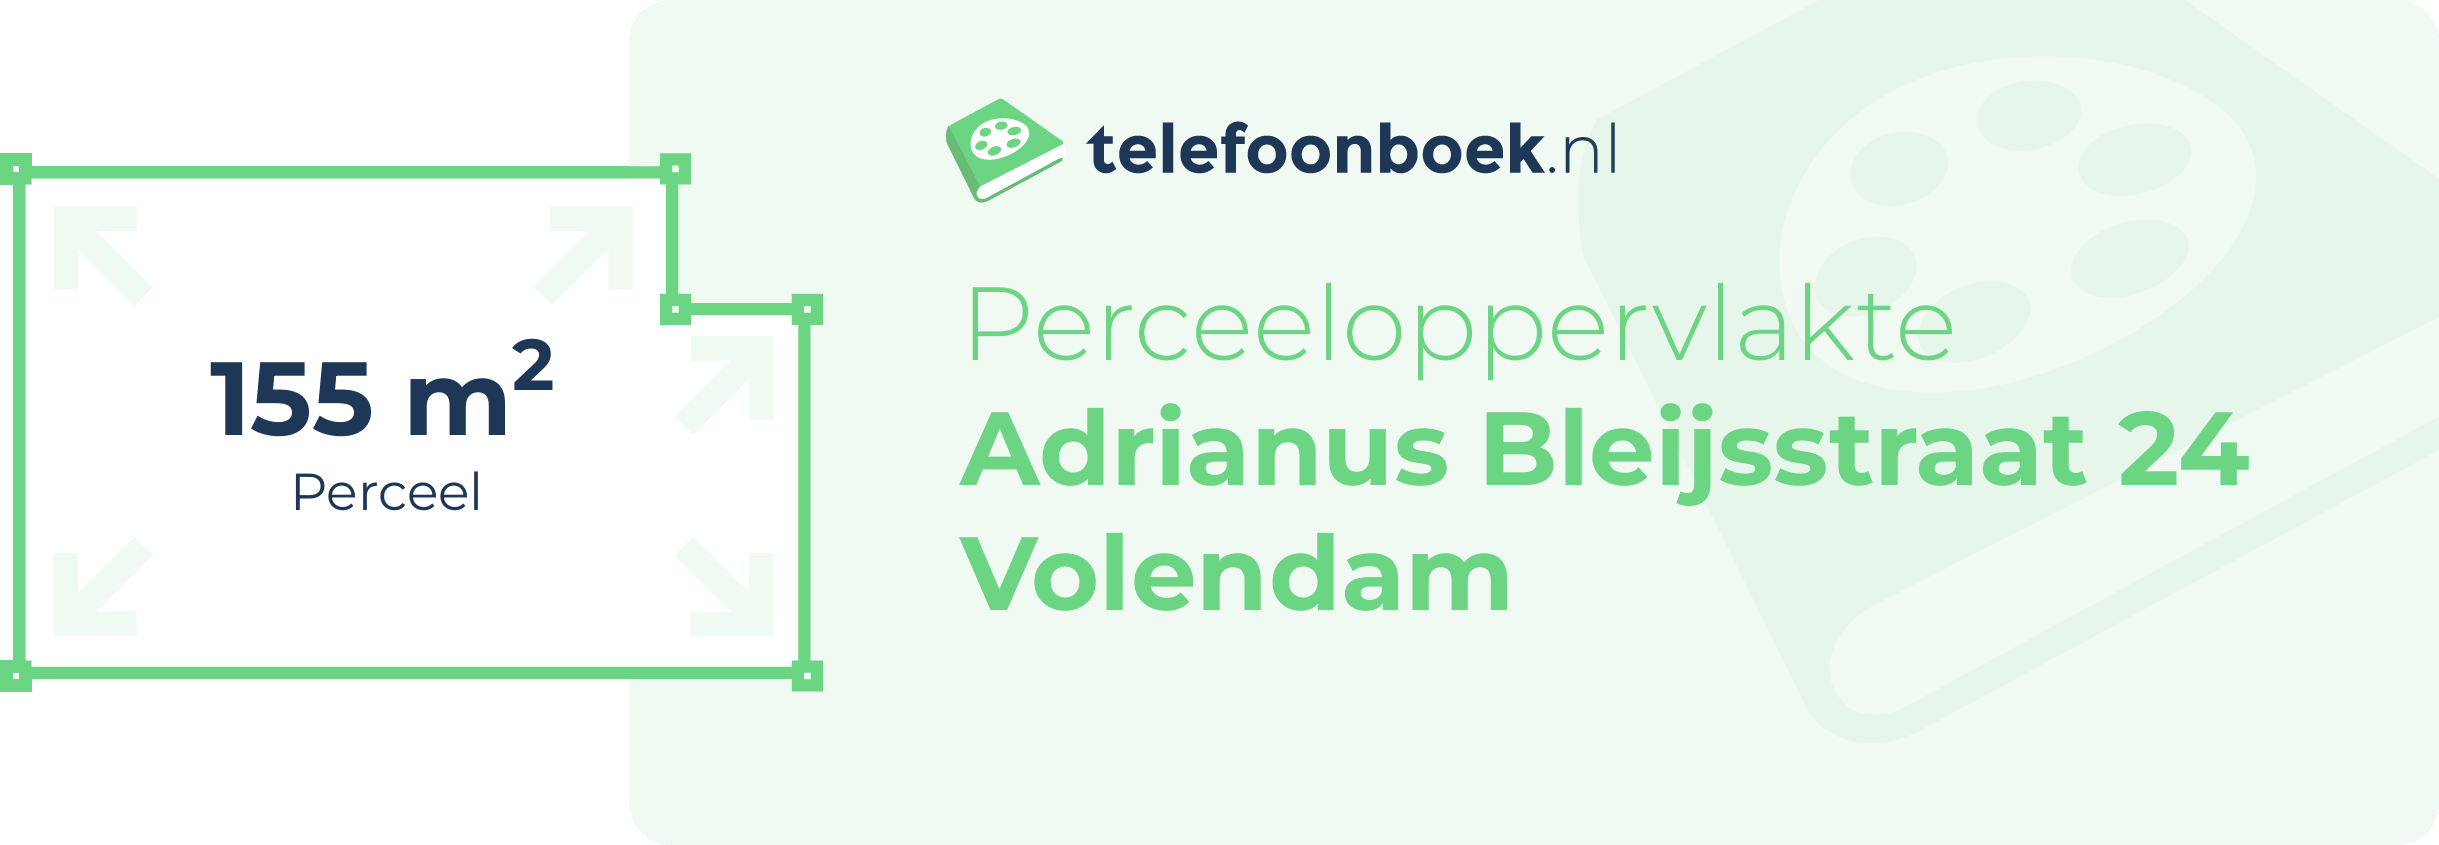 Perceeloppervlakte Adrianus Bleijsstraat 24 Volendam